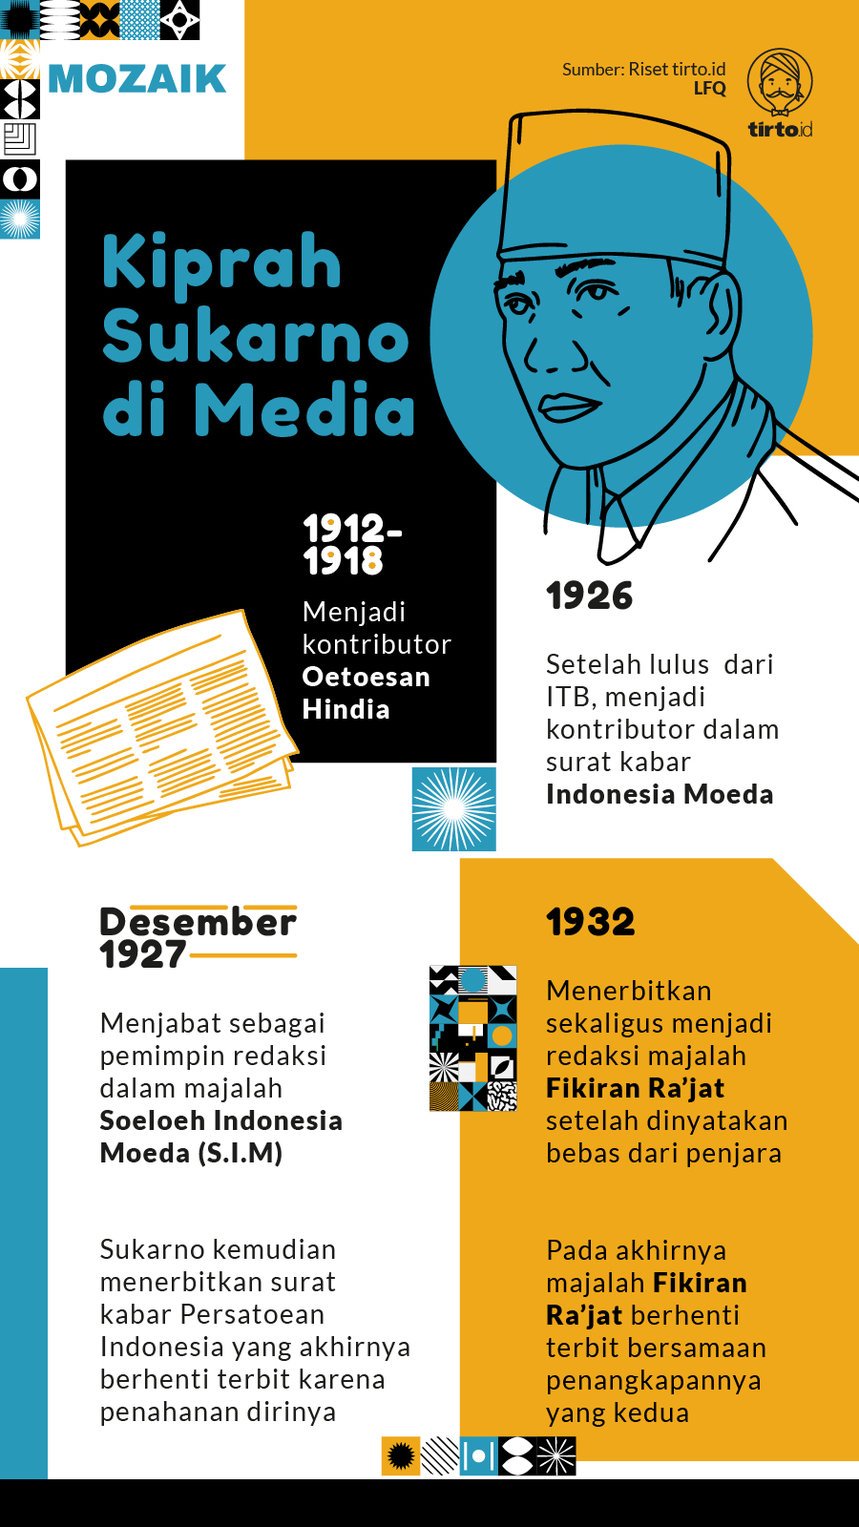 Infografik Mozaik Kiprah Sukarno di Media